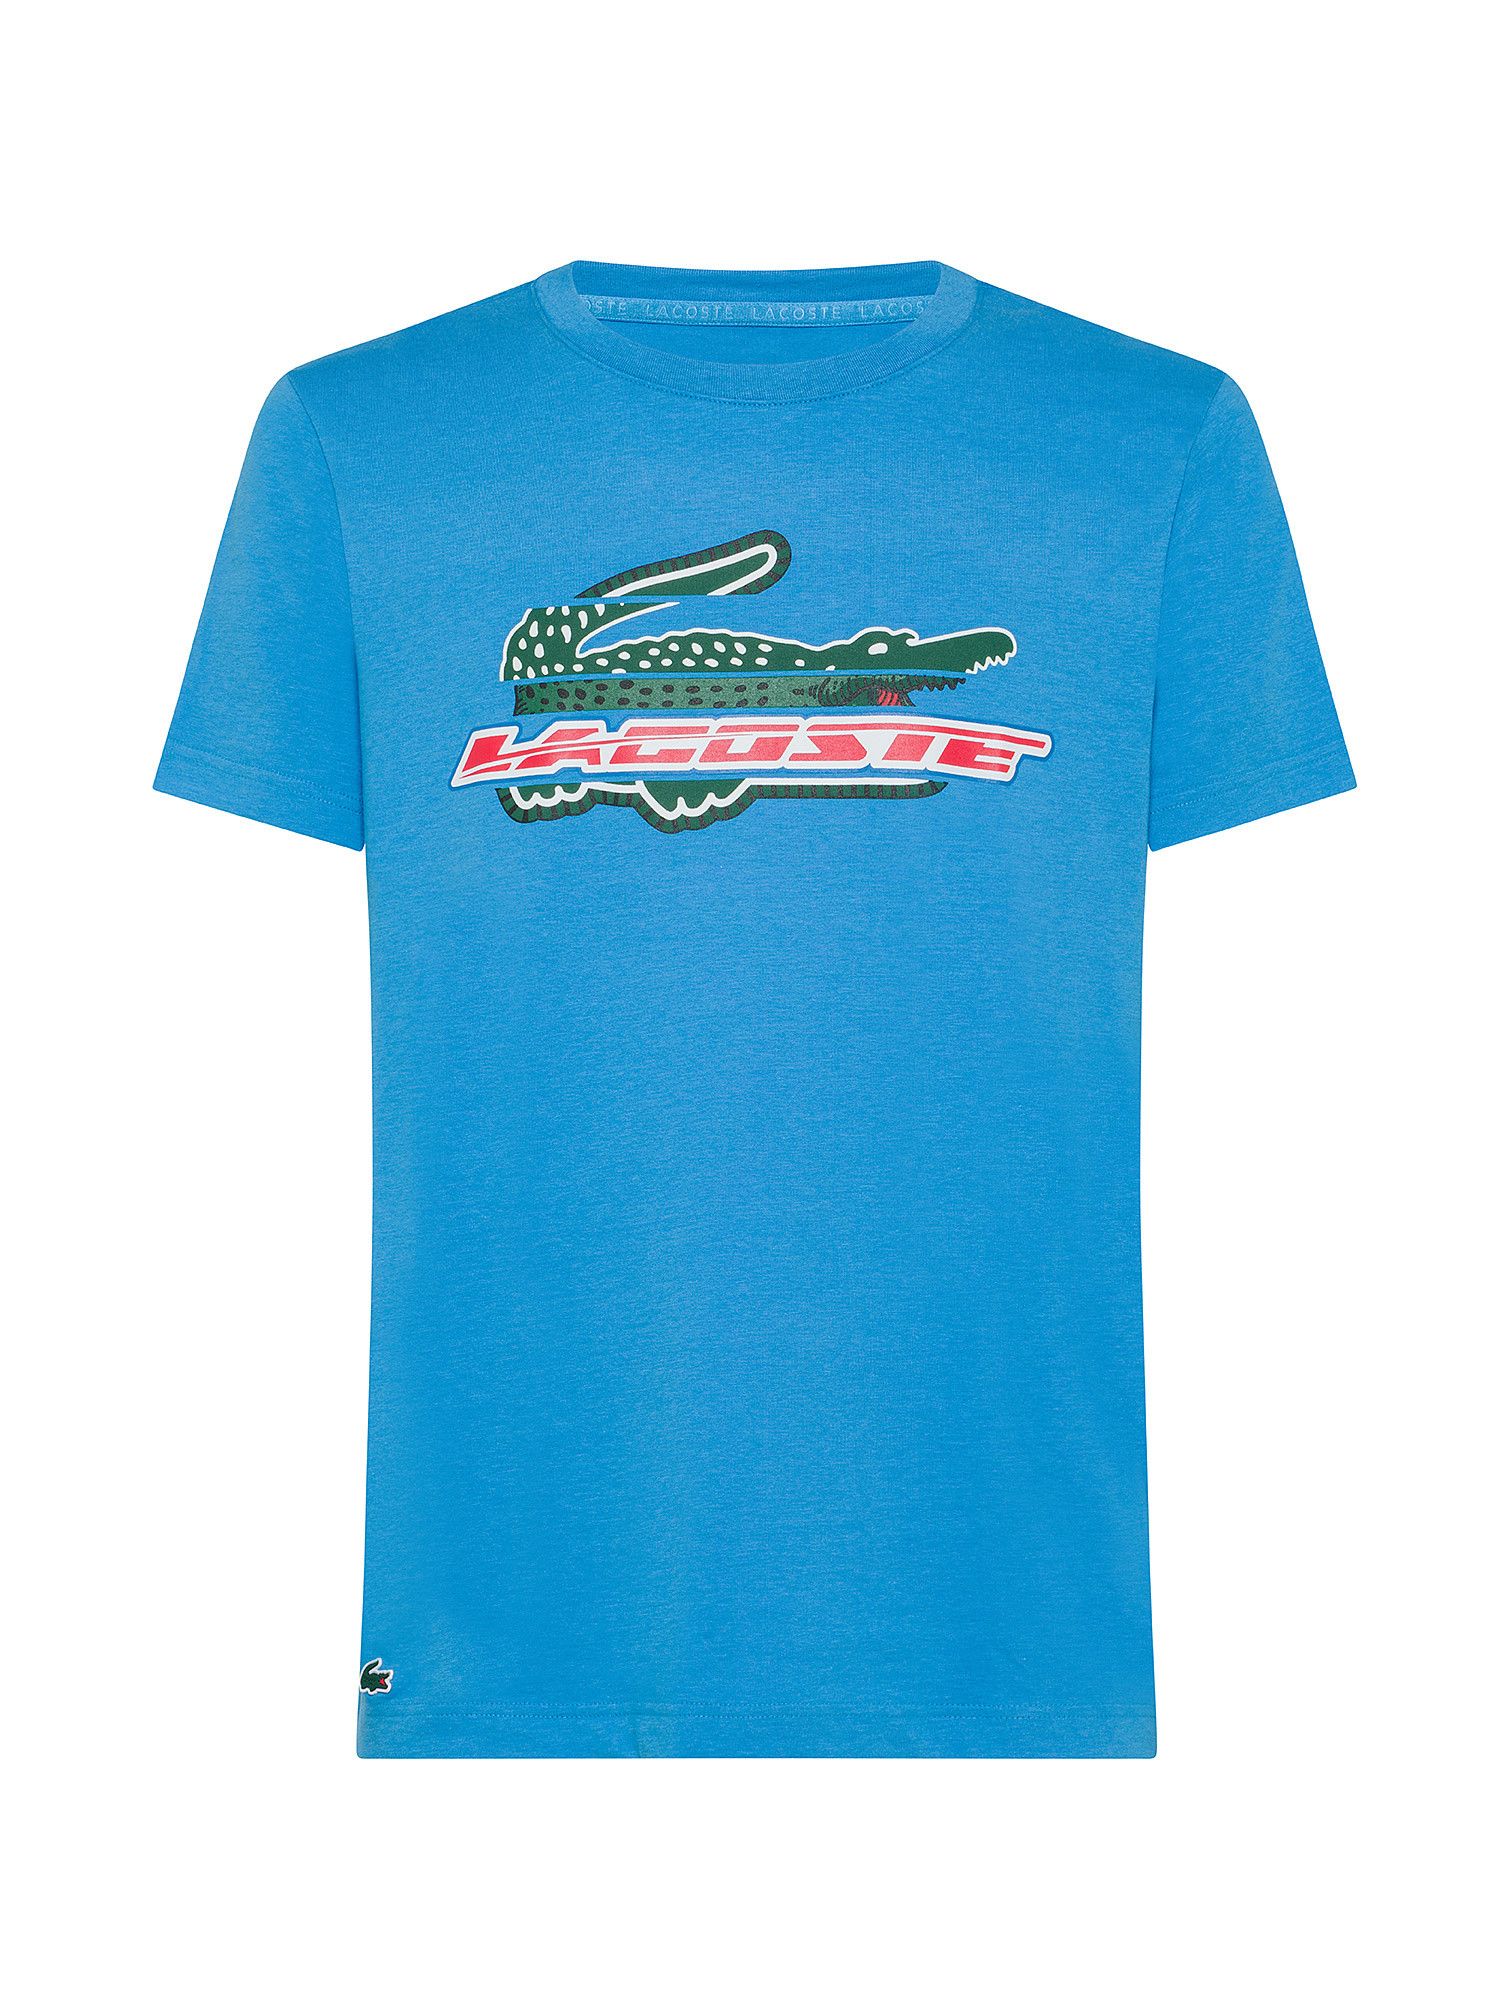 Lacoste - Regular fit sports T-shirt, Light Blue, large image number 0